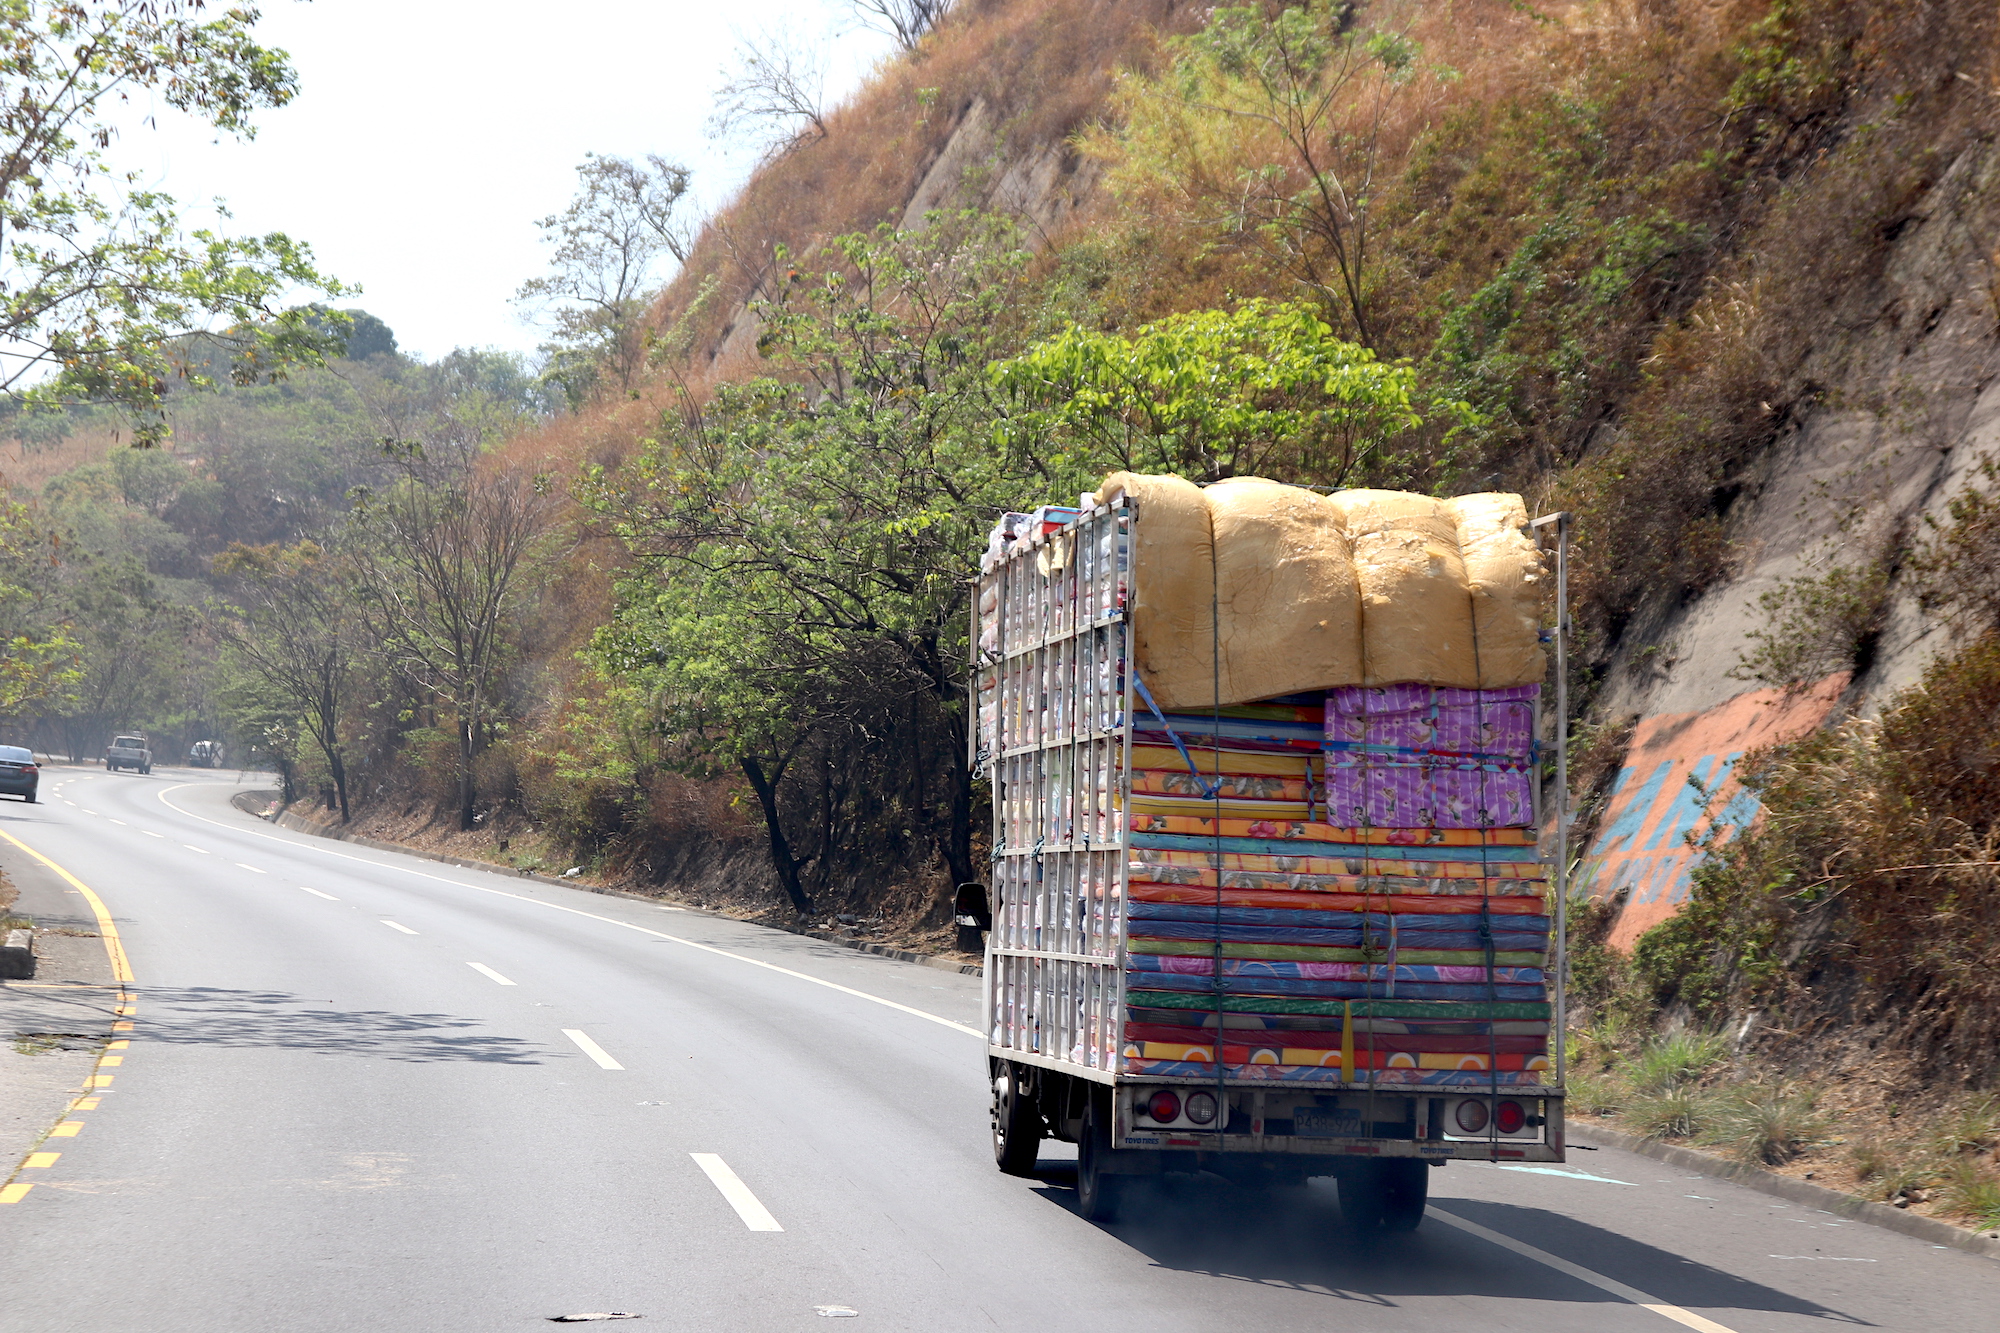 Funny road encounters in El Salvador